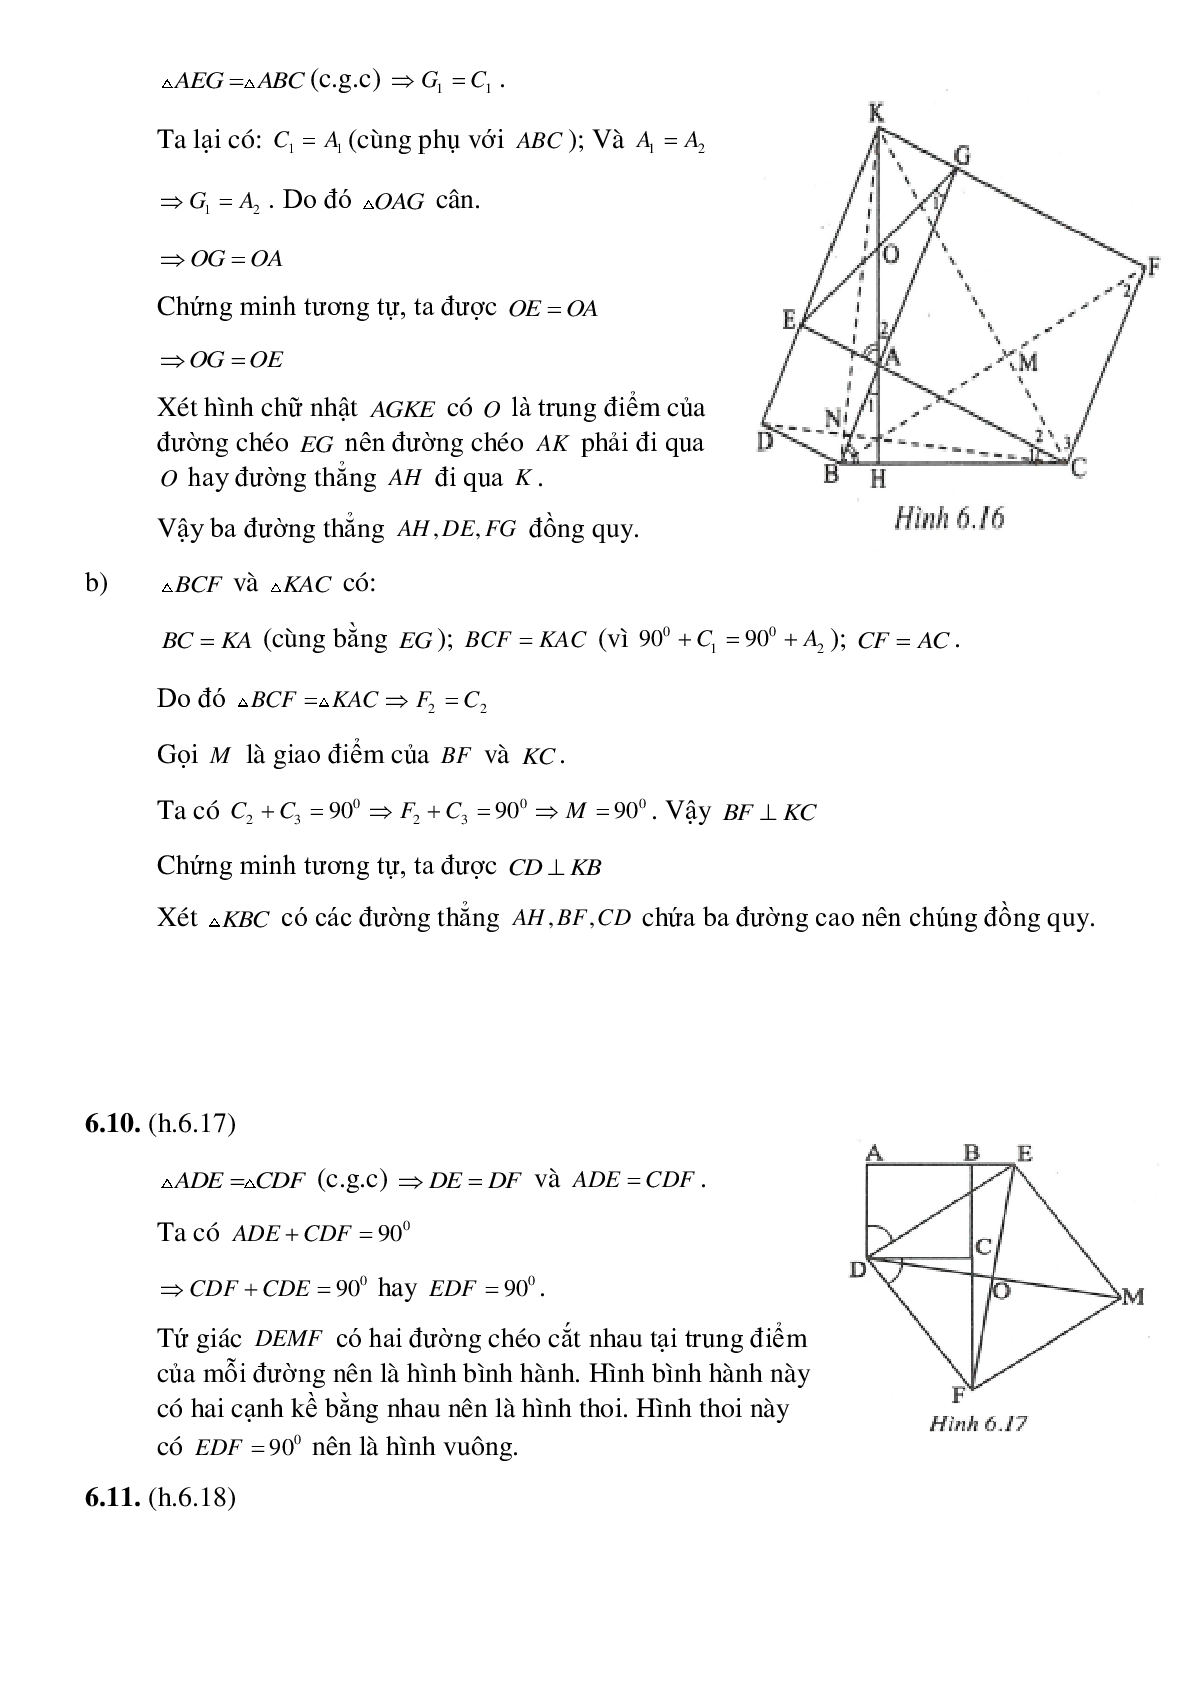 Hình thoi và hình vuông (trang 10)